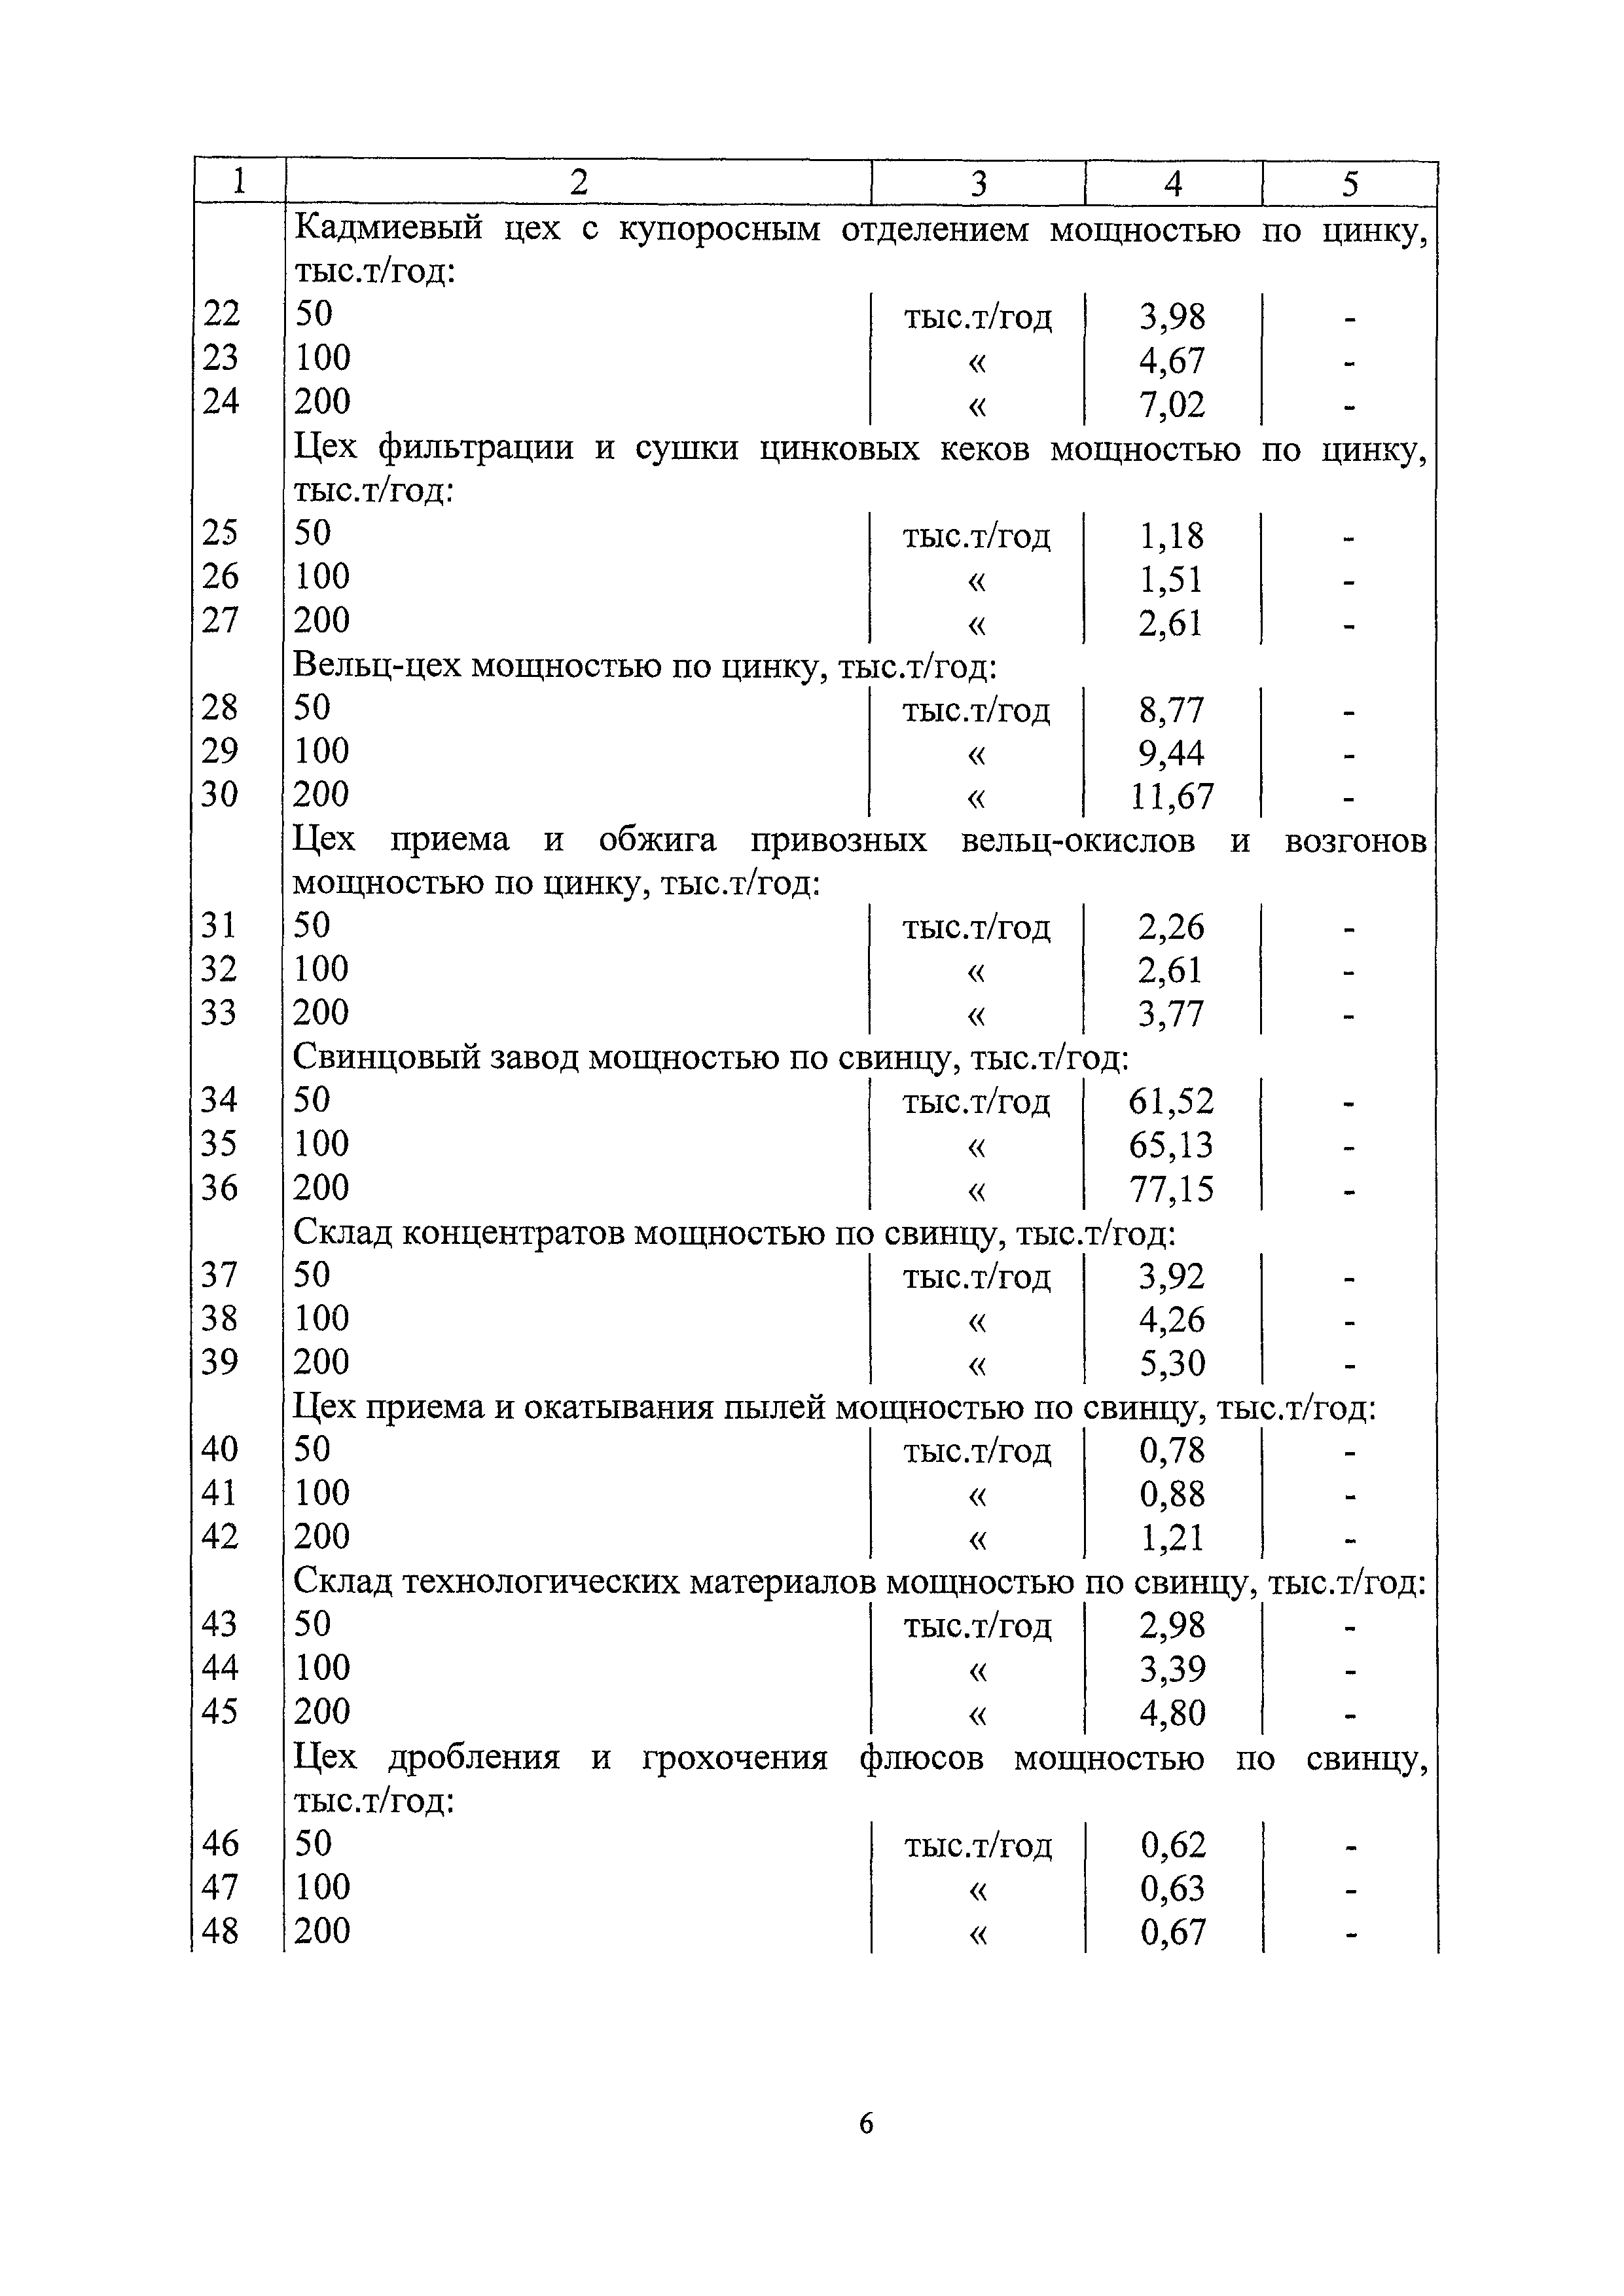 СБЦП 81-2001-20